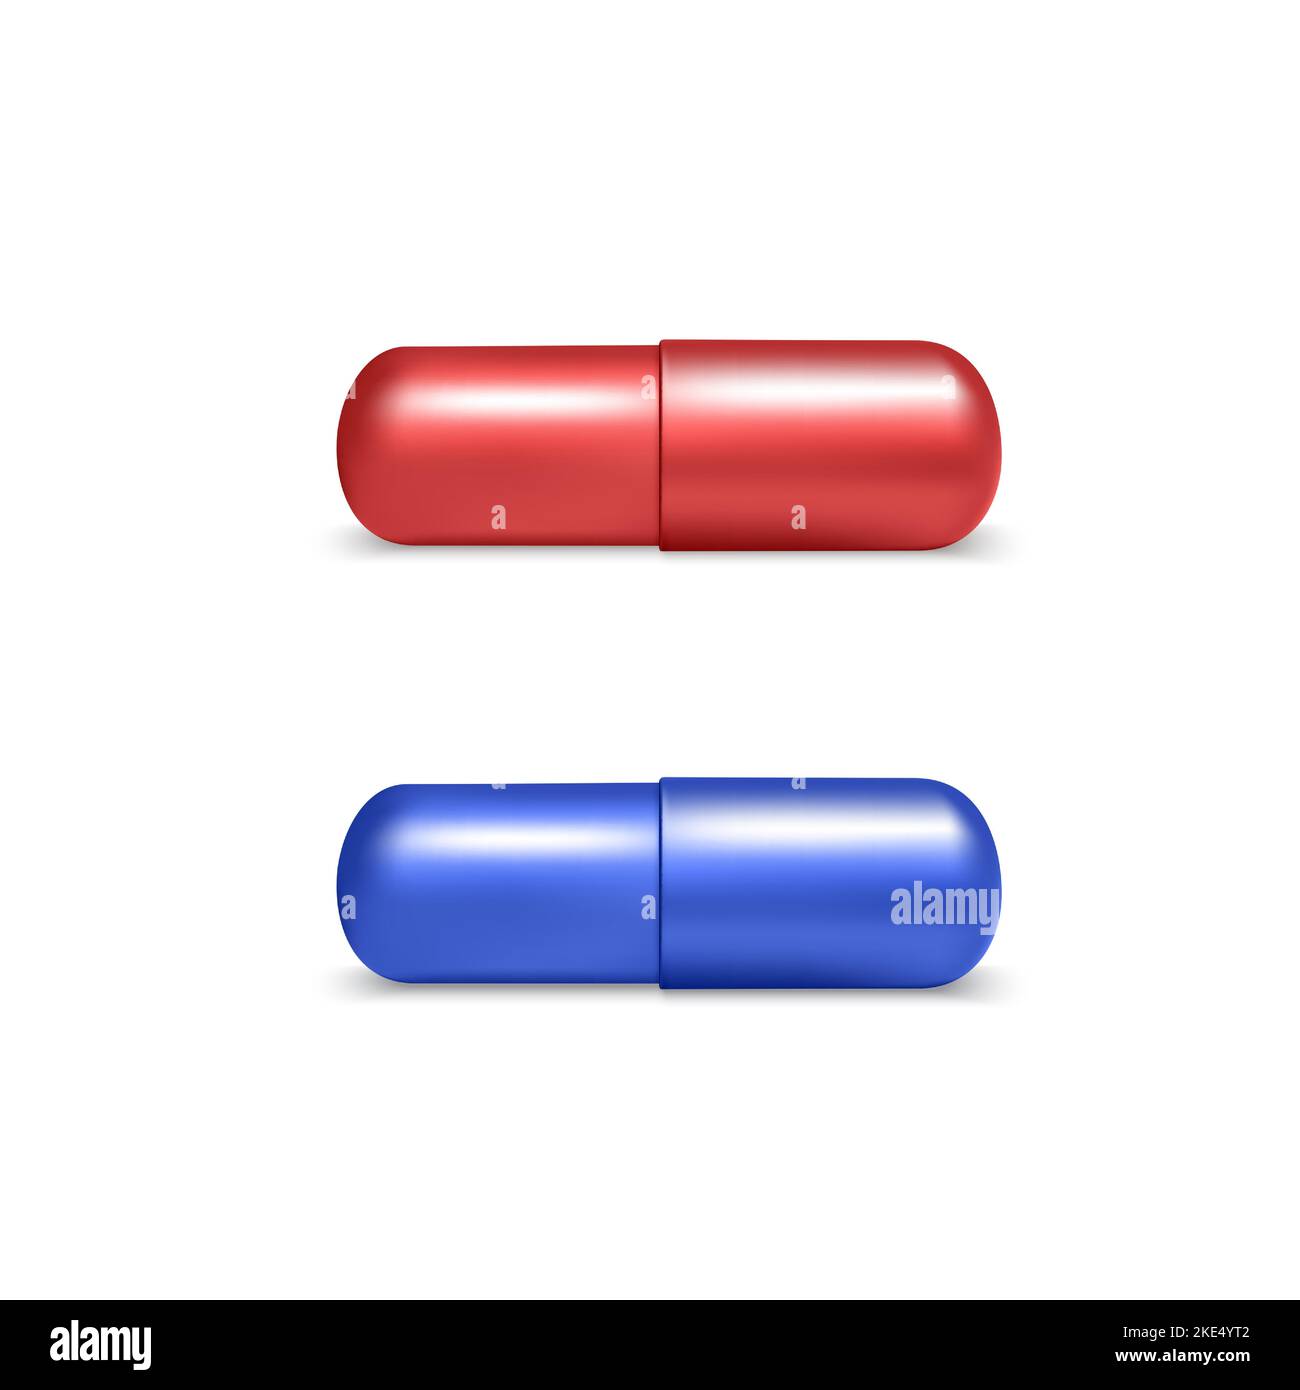 3D realistas iconos de pastillas médicas de color rojo y azul. Concepto de elección en estilo de matriz. Objeto médico y sanitario. Ilustración vectorial Ilustración del Vector